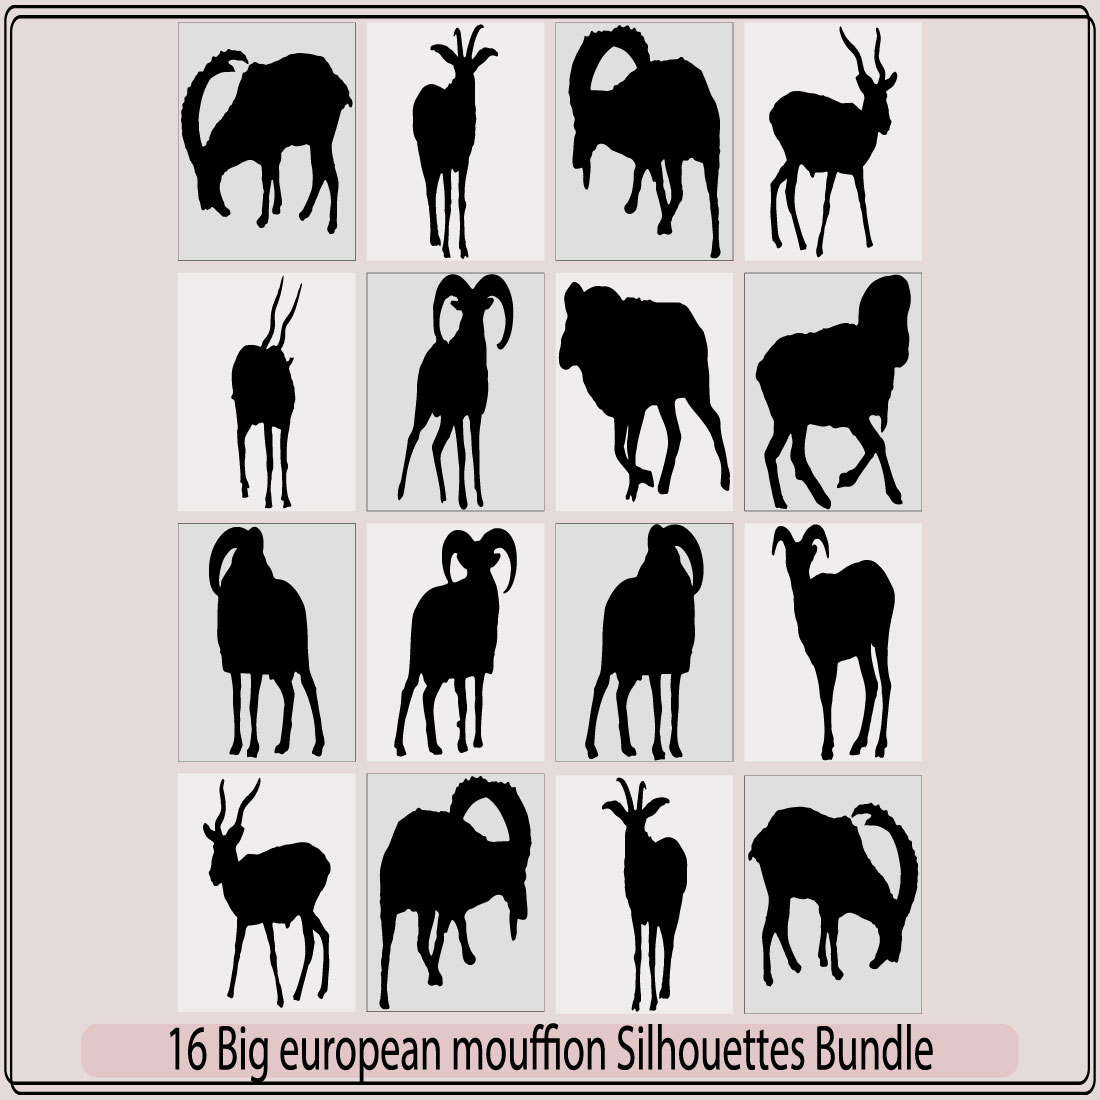 Big european moufflon silhouette bundle,Big european moufflon illustration,Big european moufflon vector, preview image.